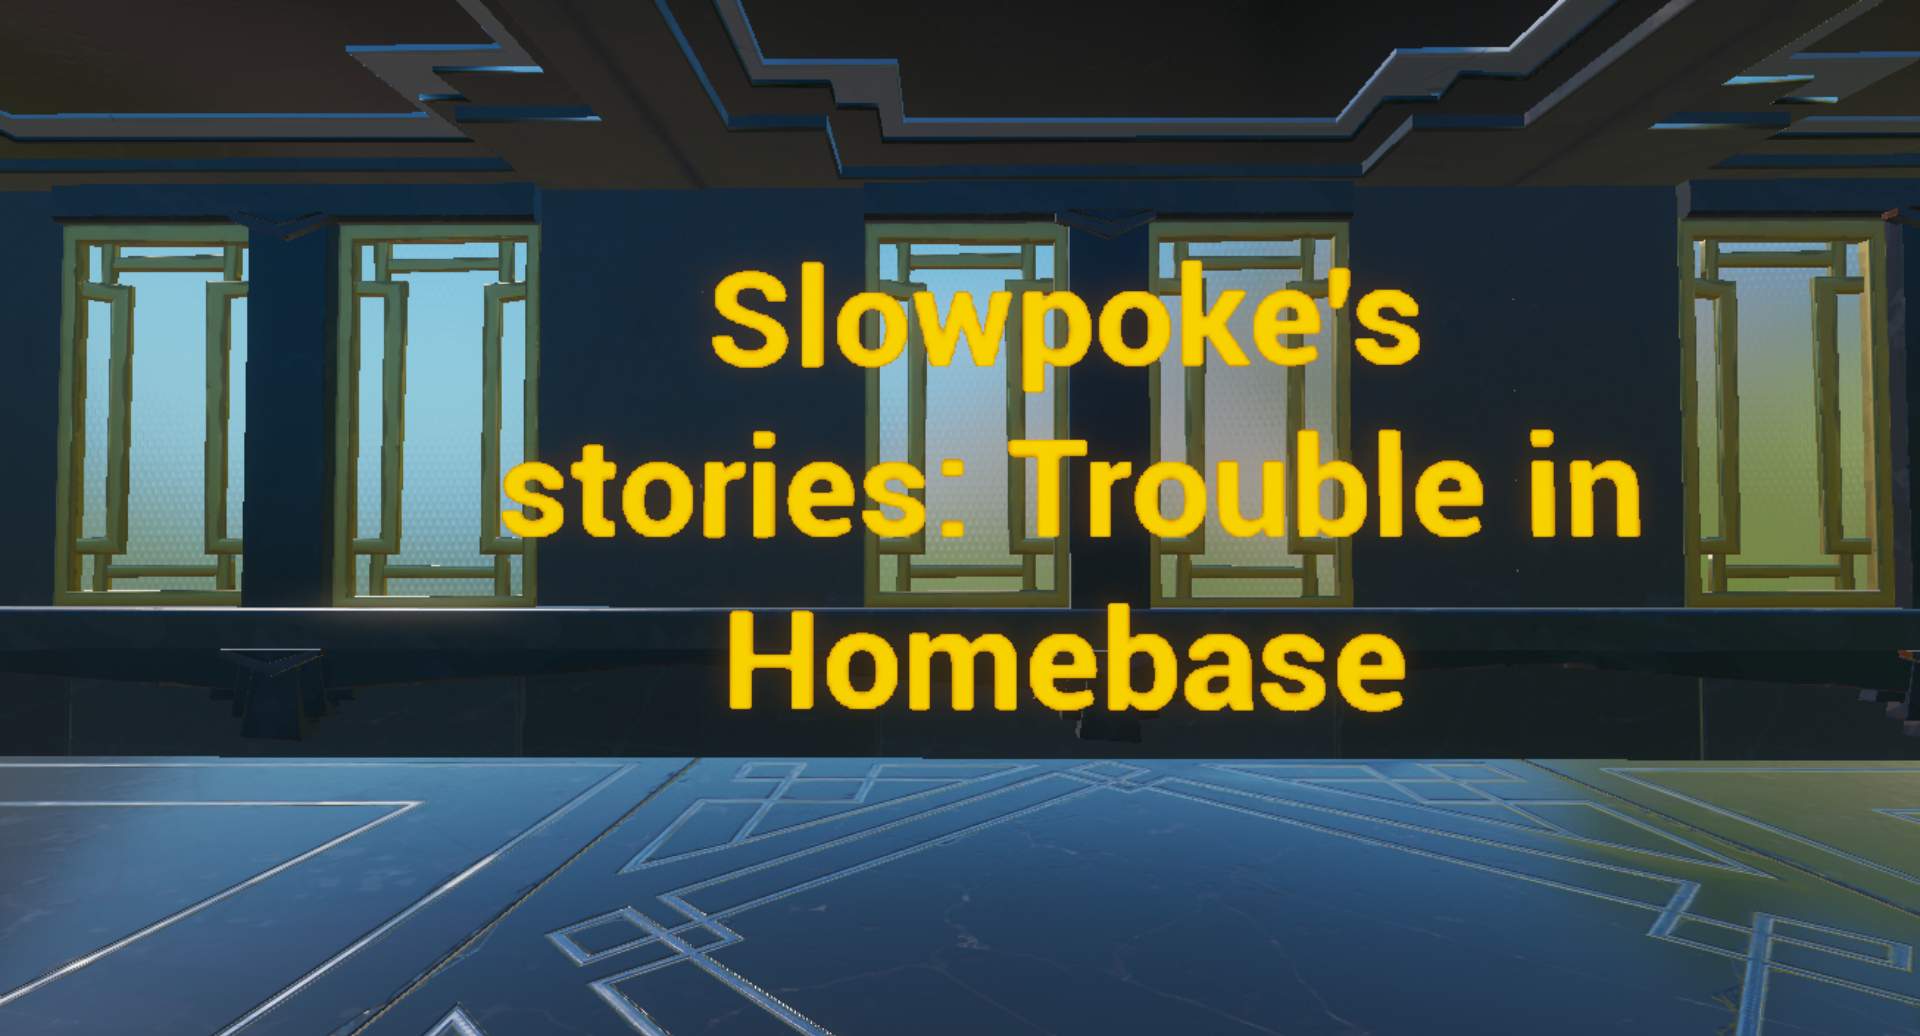 SLOWPOKE'S STORIES: TROUBLE IN HOMEBASE